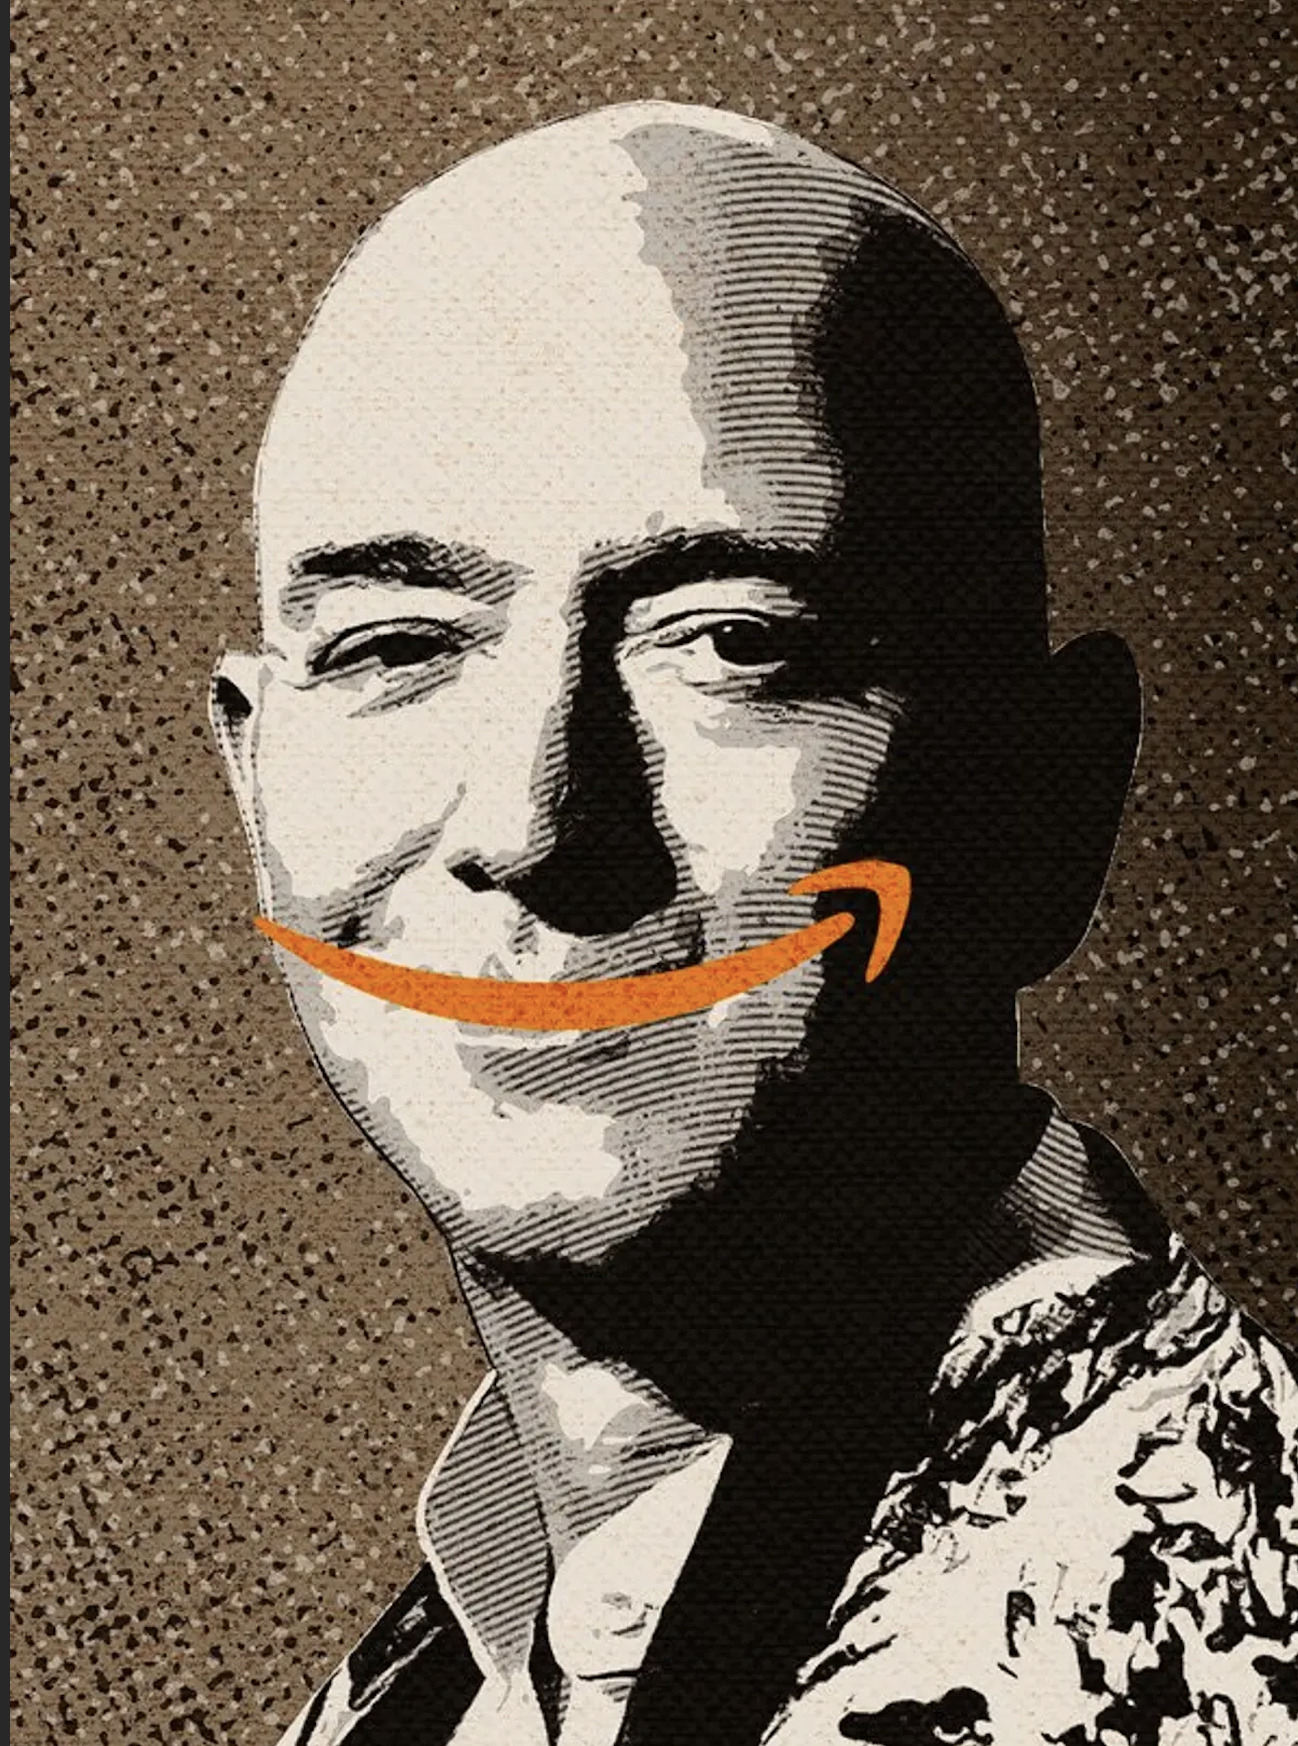 Il logo di Amazon è usato in modo ironico come se fosse un sorriso sul volto di Jeff Bezos